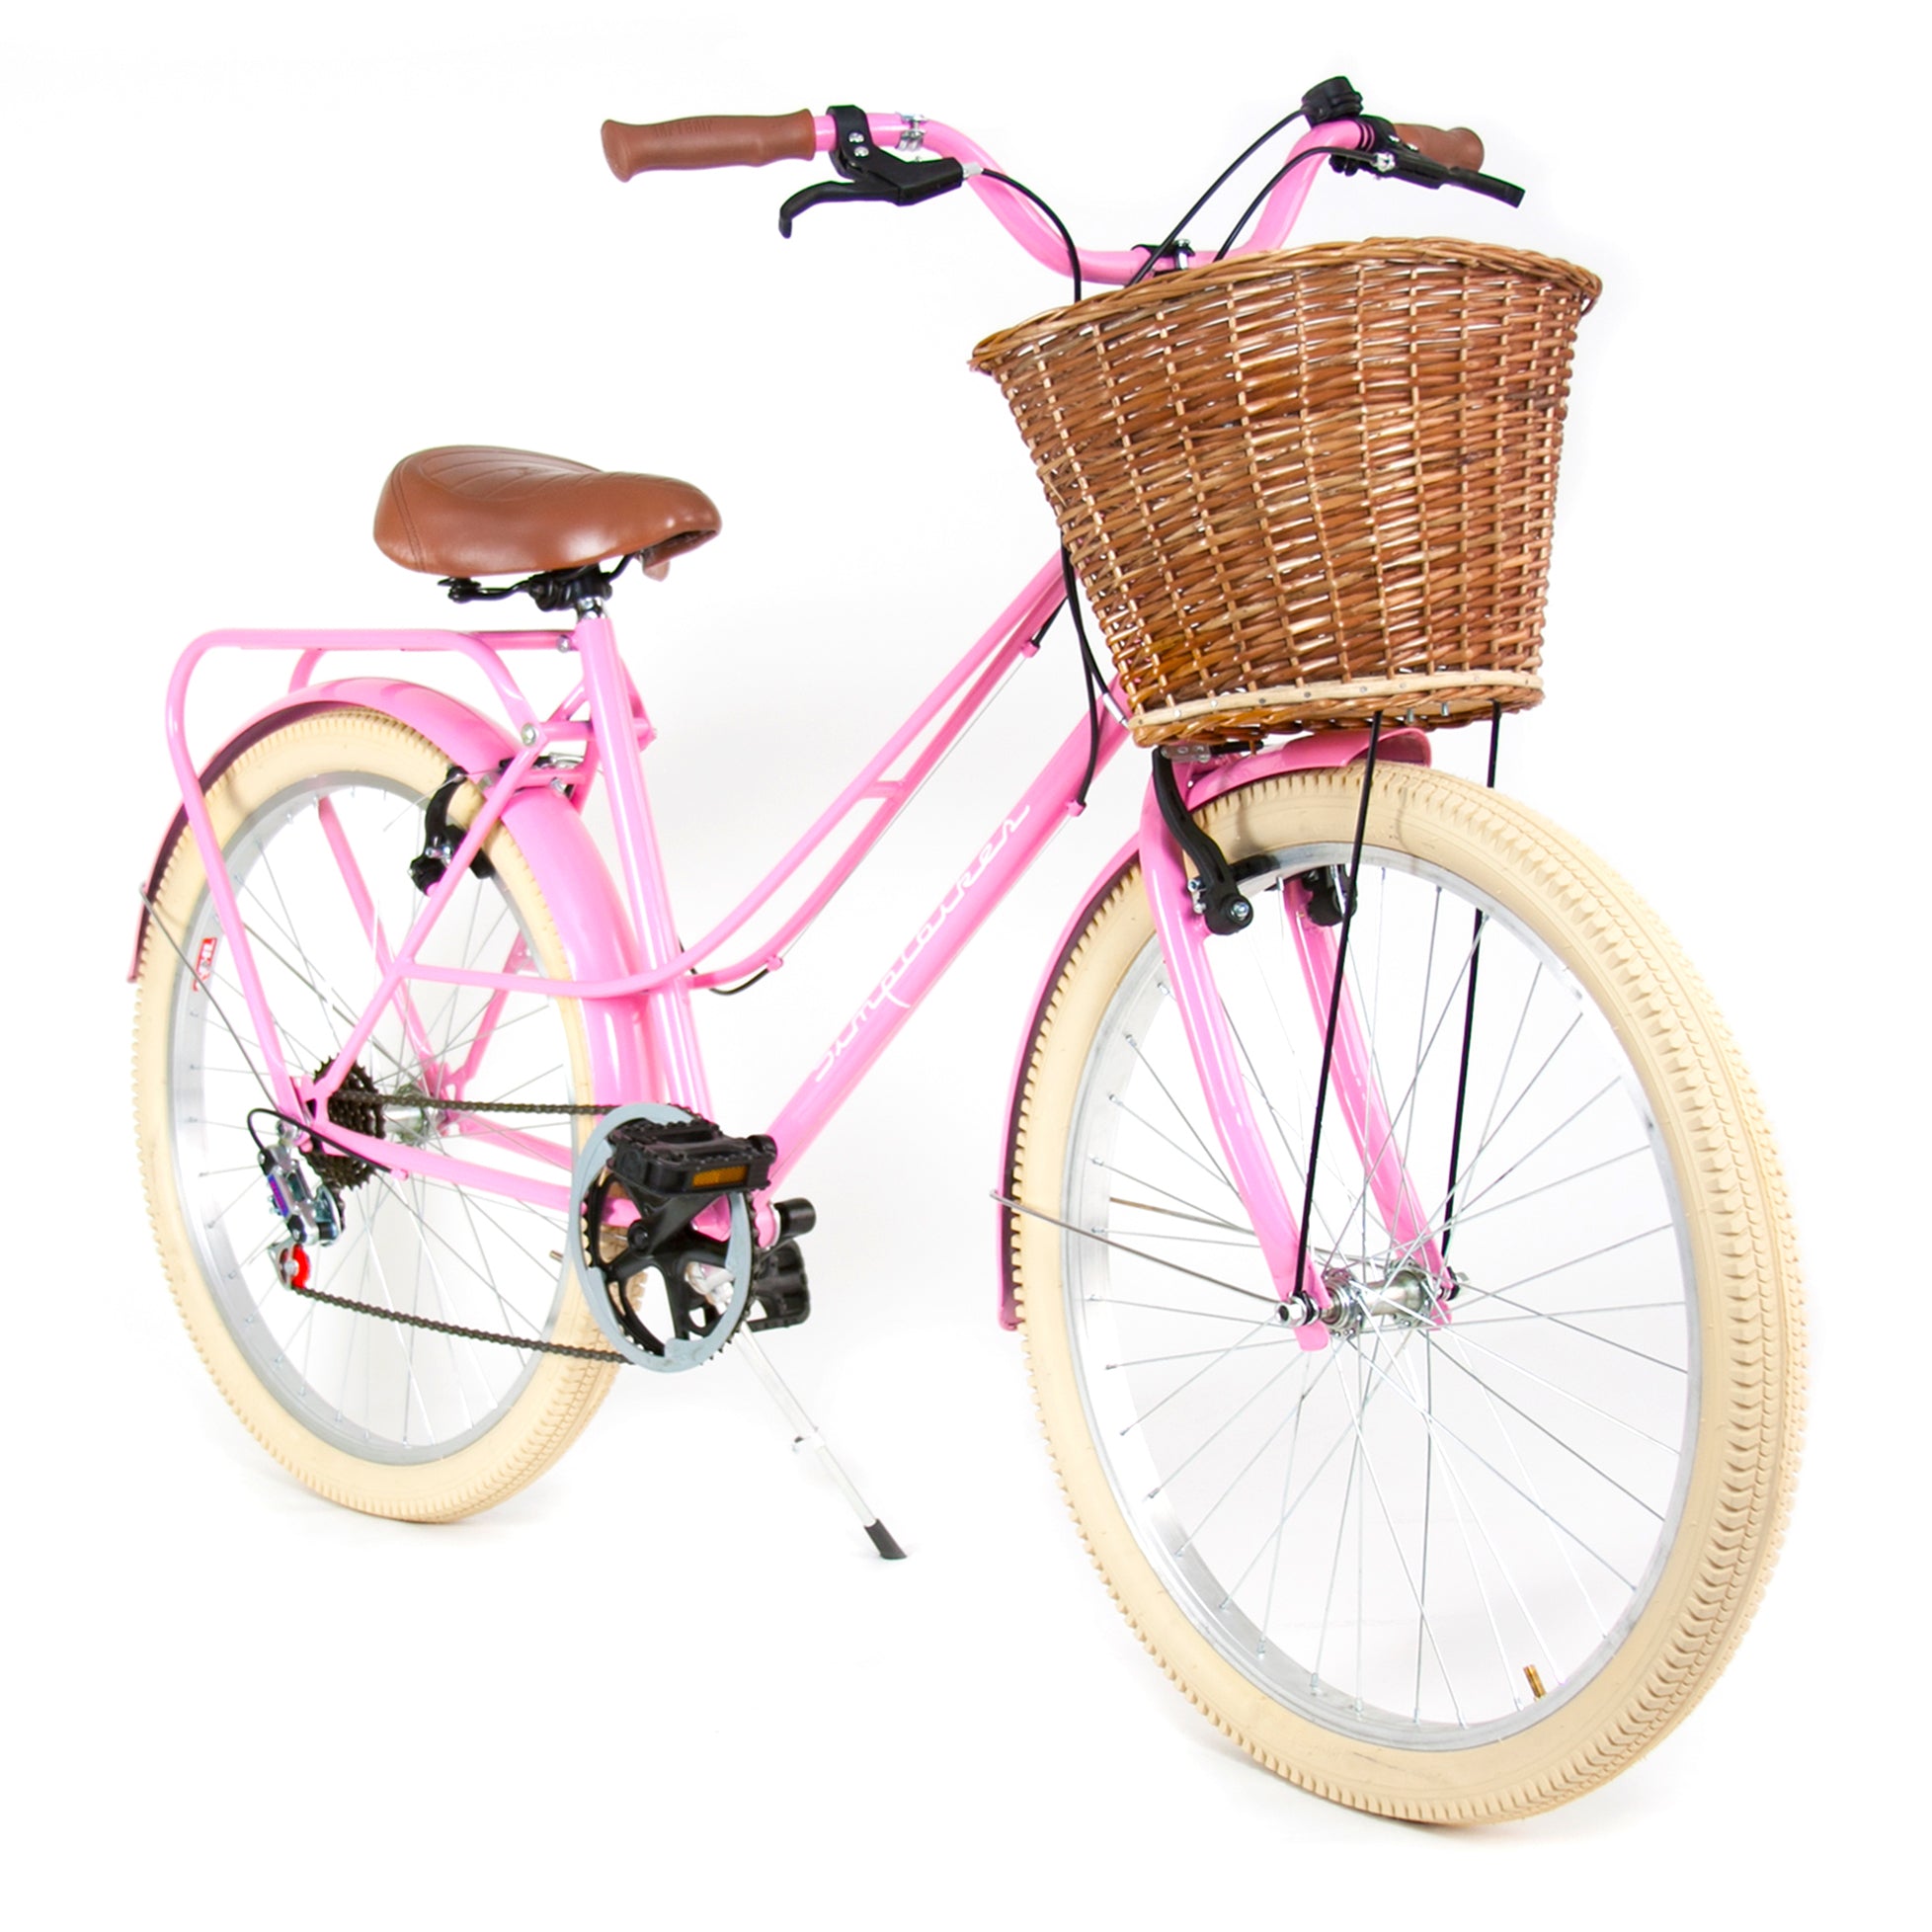 Bicicleta Vintage Dama  Rosa y Menta Canasta Tubular. – Bicicletas Vintage